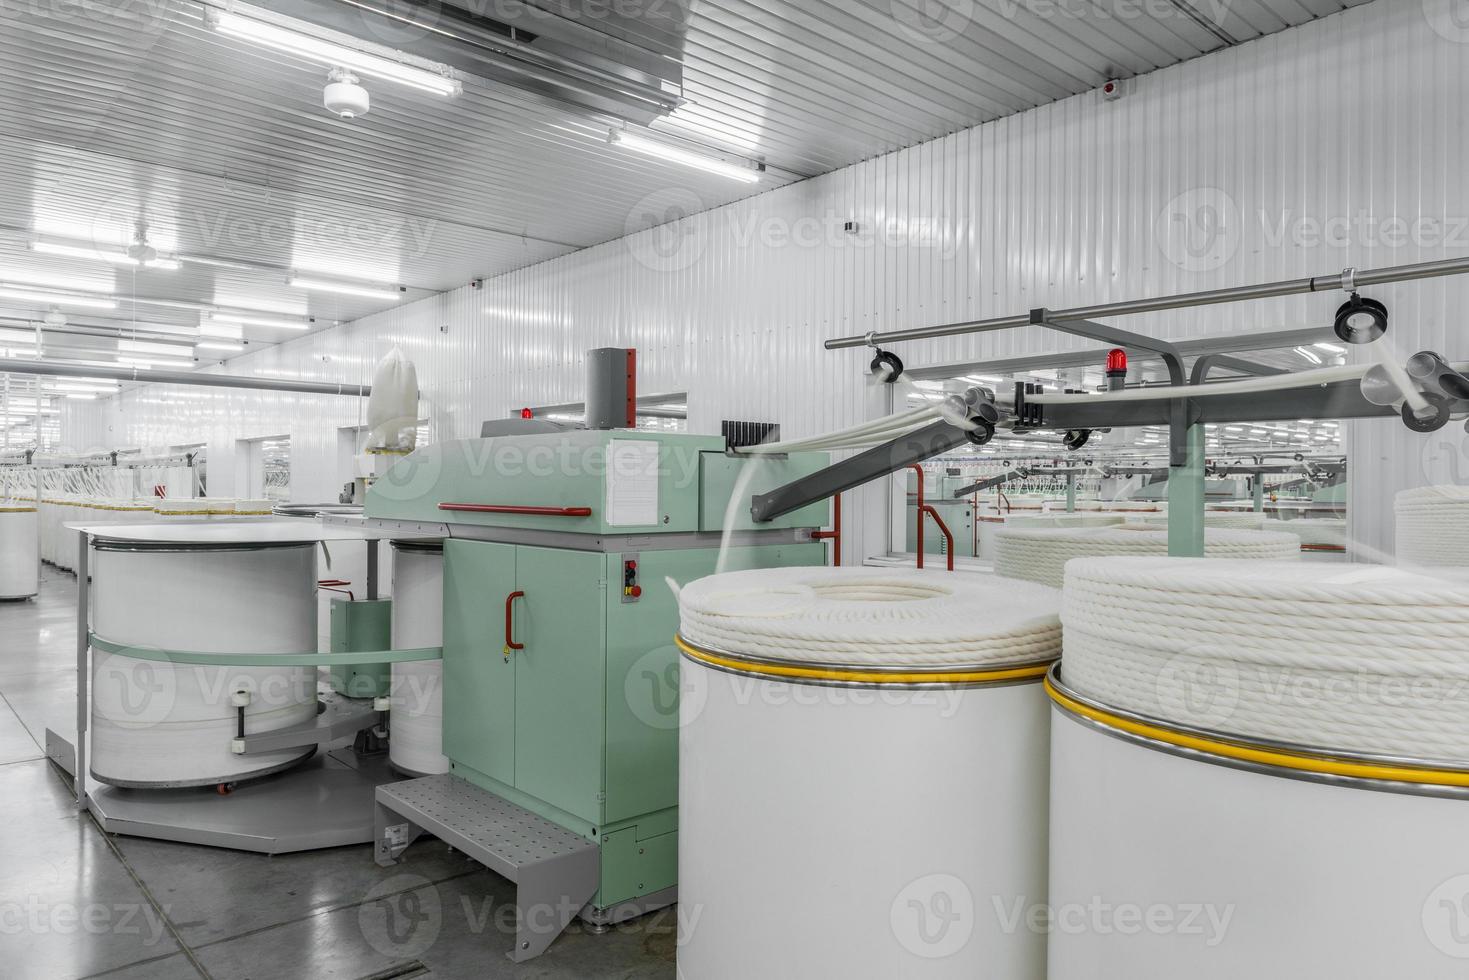 macchinari e attrezzature in officina per la produzione del filo. interno della fabbrica tessile industriale foto